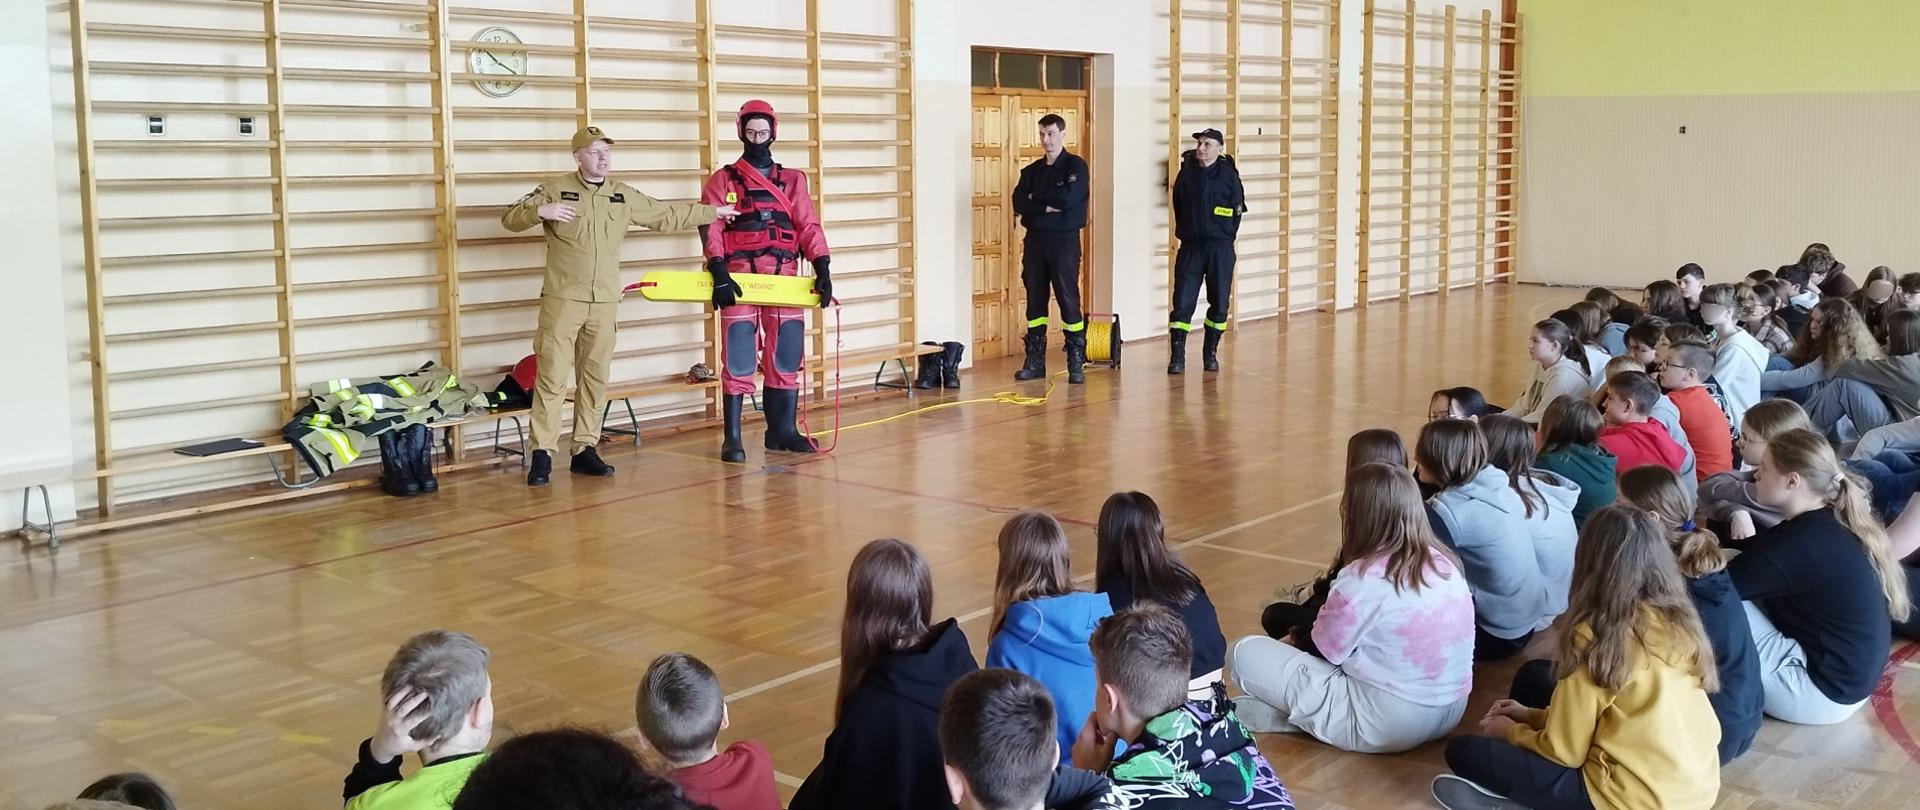 Zdjęcie przedstawia dzieci siedzące na podłodze sali gimnastycznej dalej strażacy prezentują sprzęt wykorzystywany podczas działań ratowniczych na akwenach wodnych.